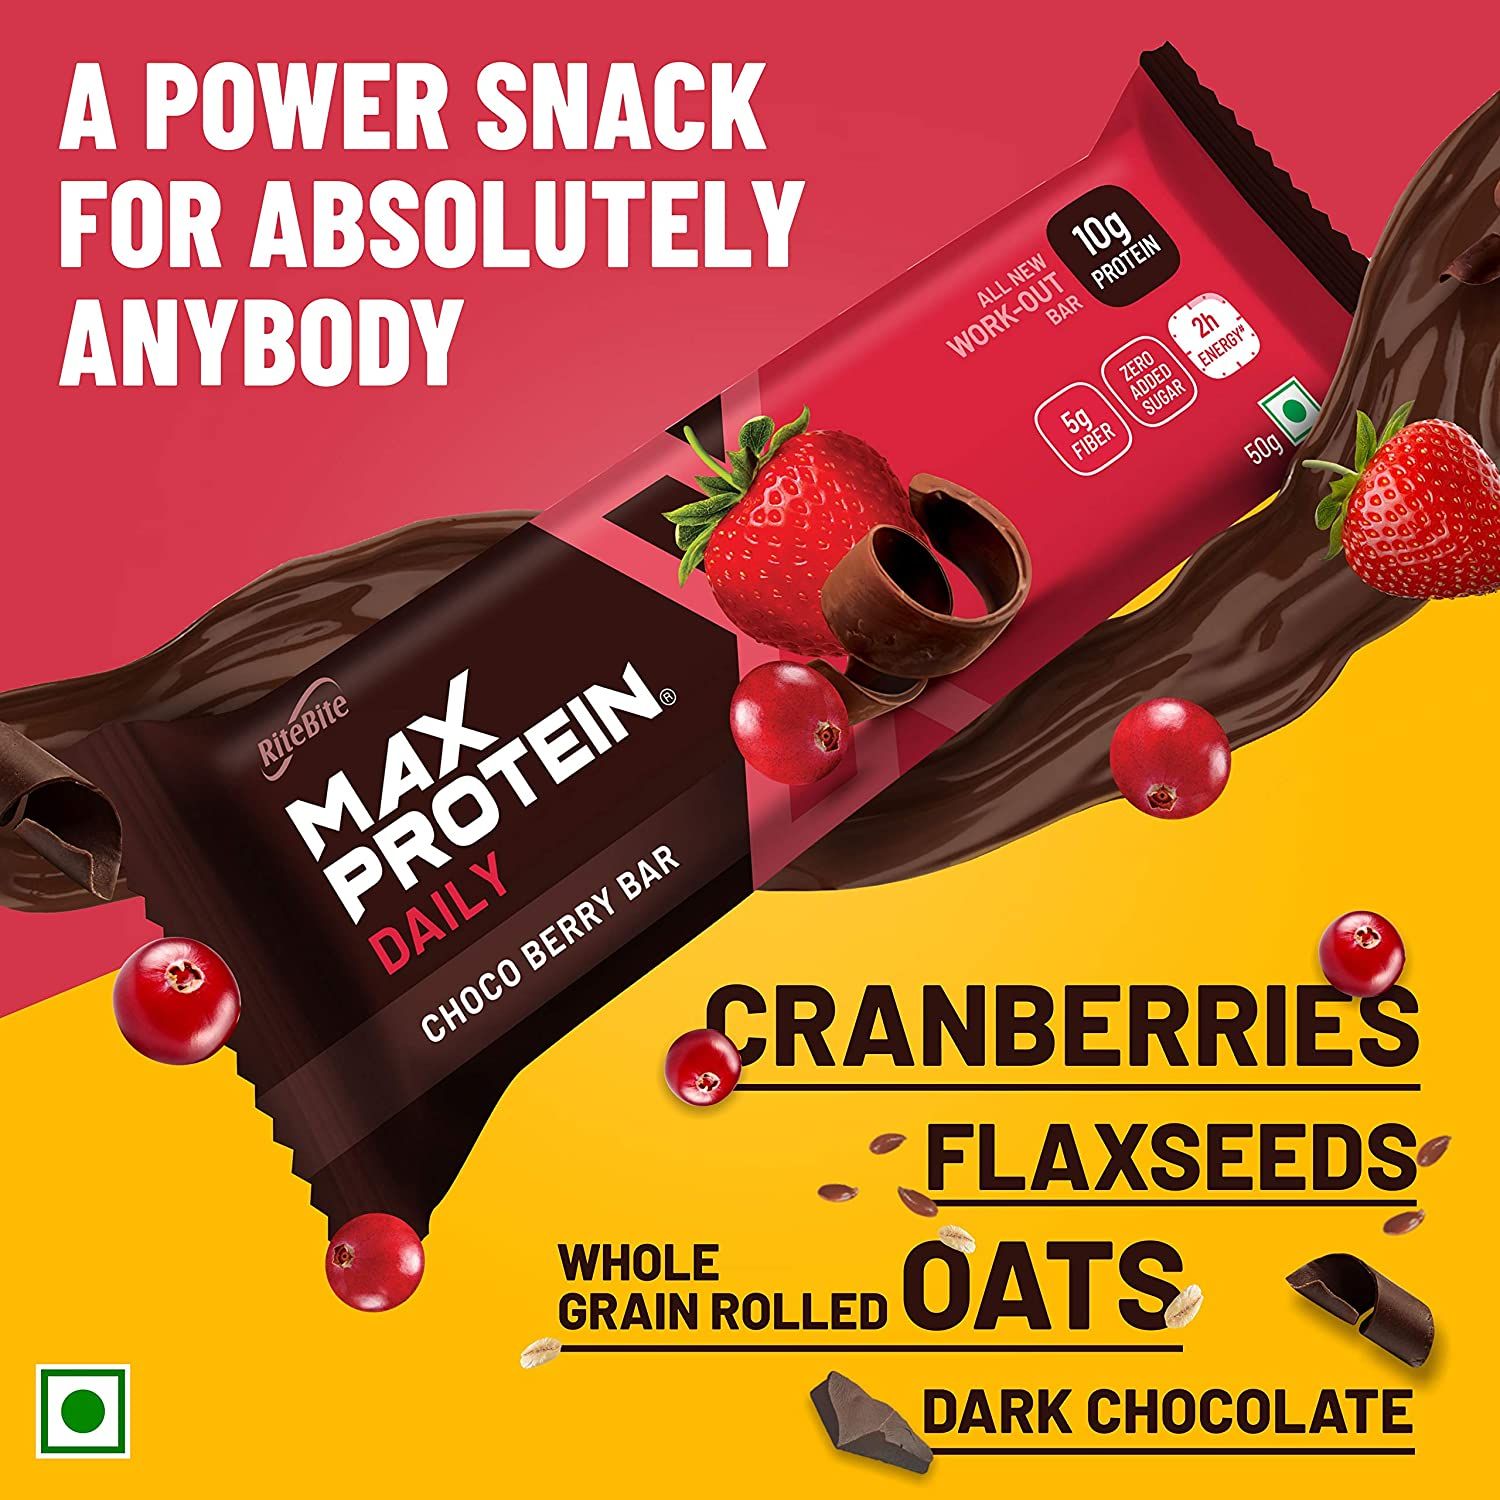 RiteBite Max Protein Daily Choco Berry  Bar Image